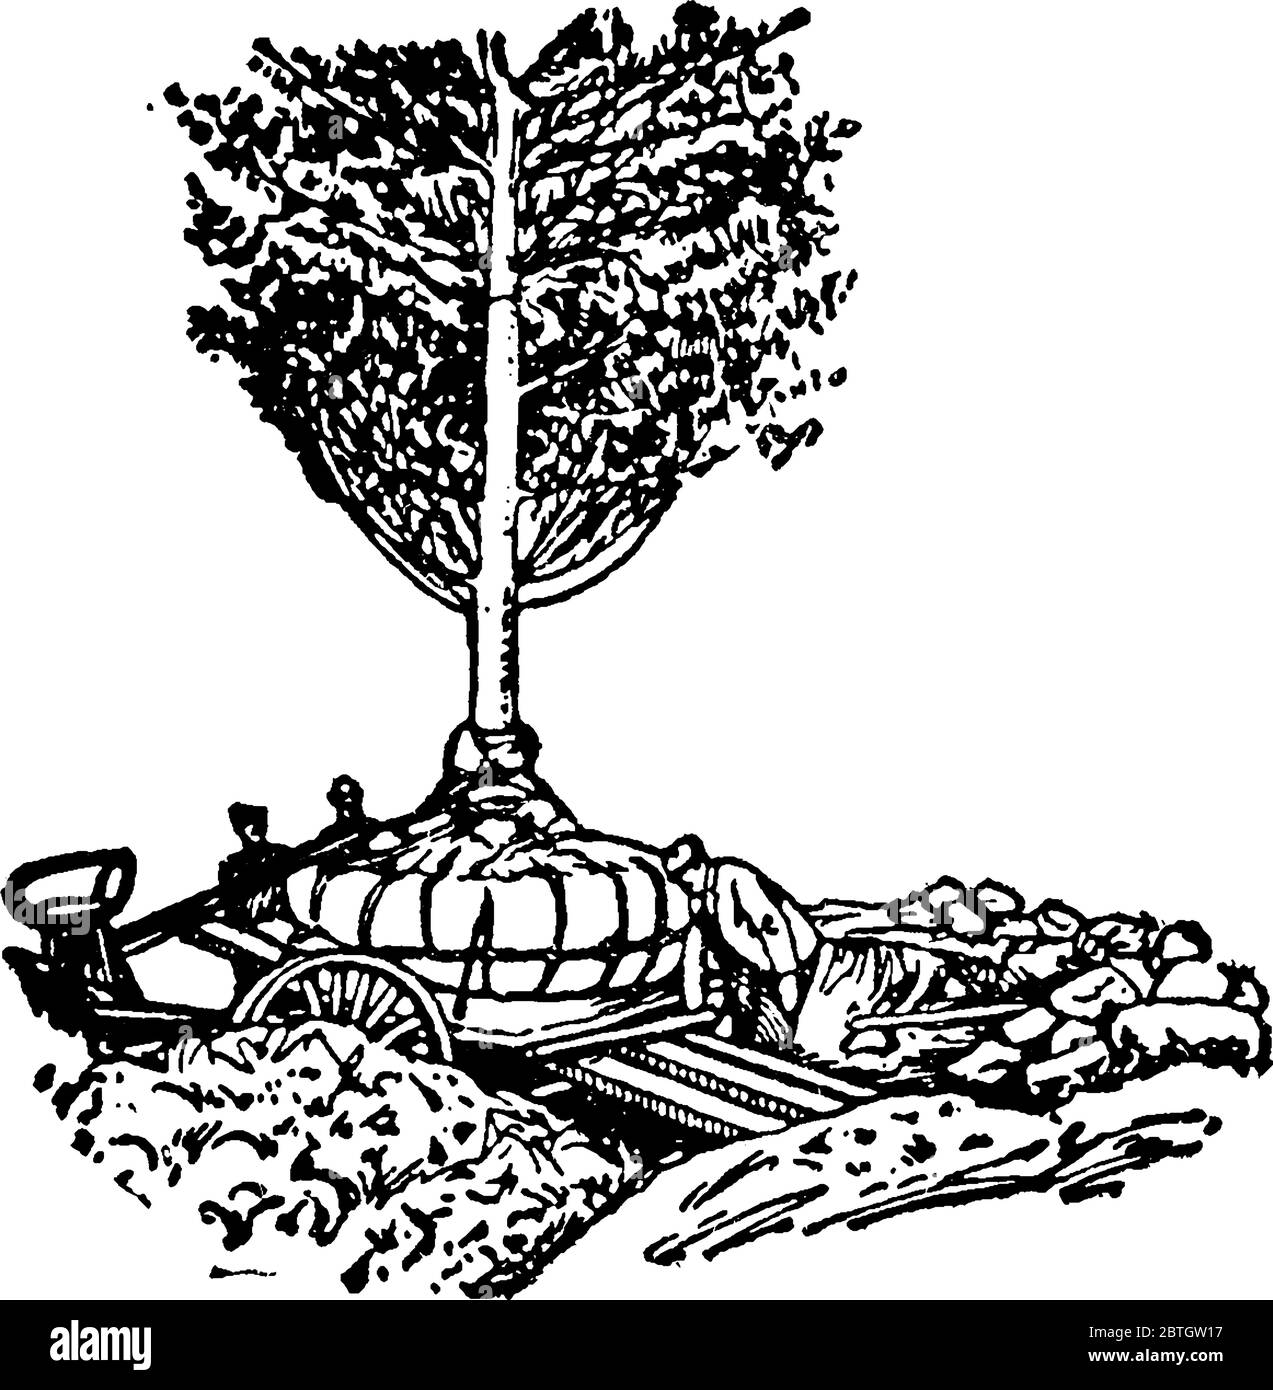 Illustration montrant une machine qui enlève l'arbre de ses racines, dessin de ligne vintage ou gravure. Illustration de Vecteur